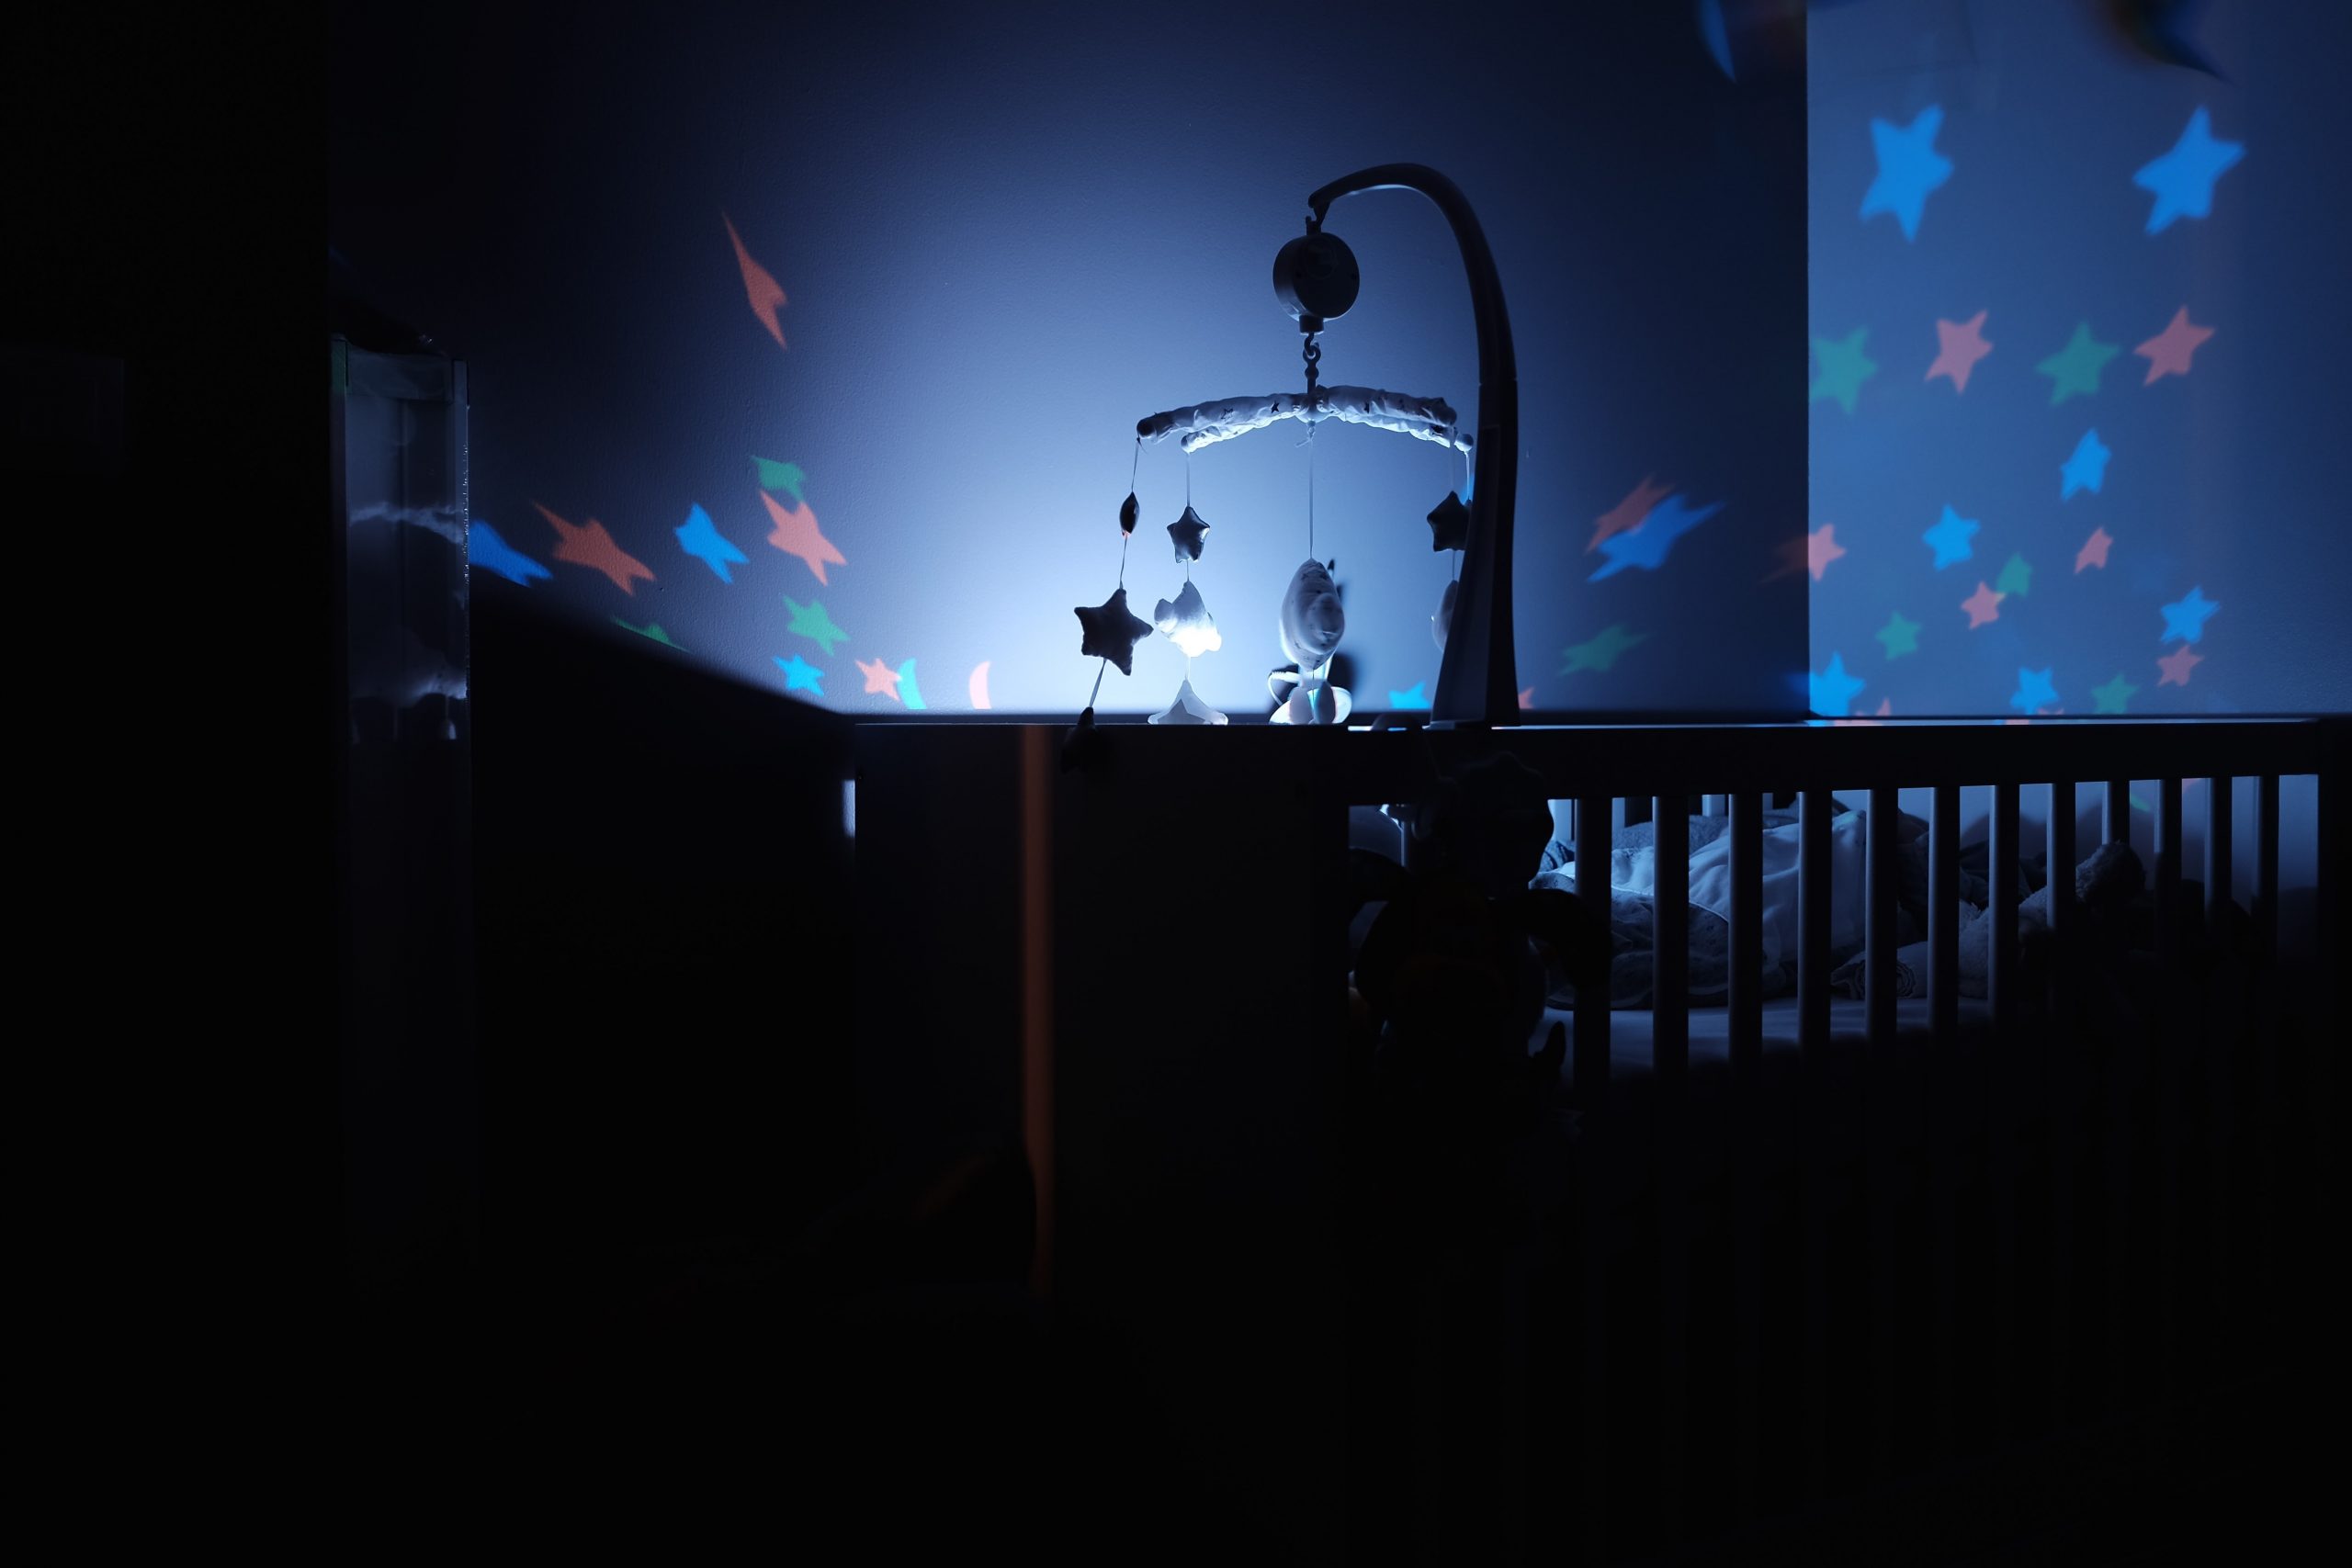 Babyzimmer im Dämmerlicht